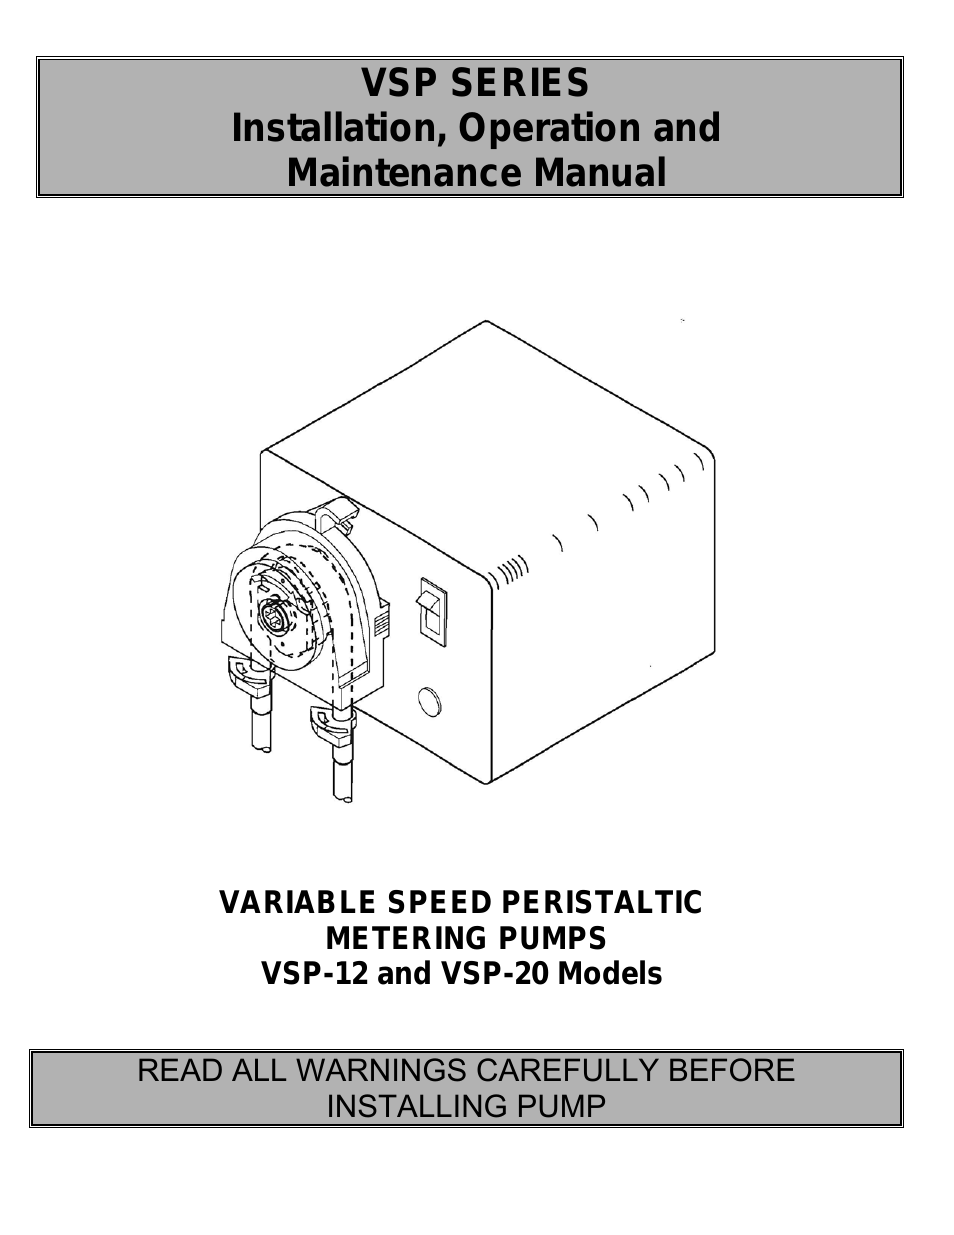 Mec-O-Matic VSP Series